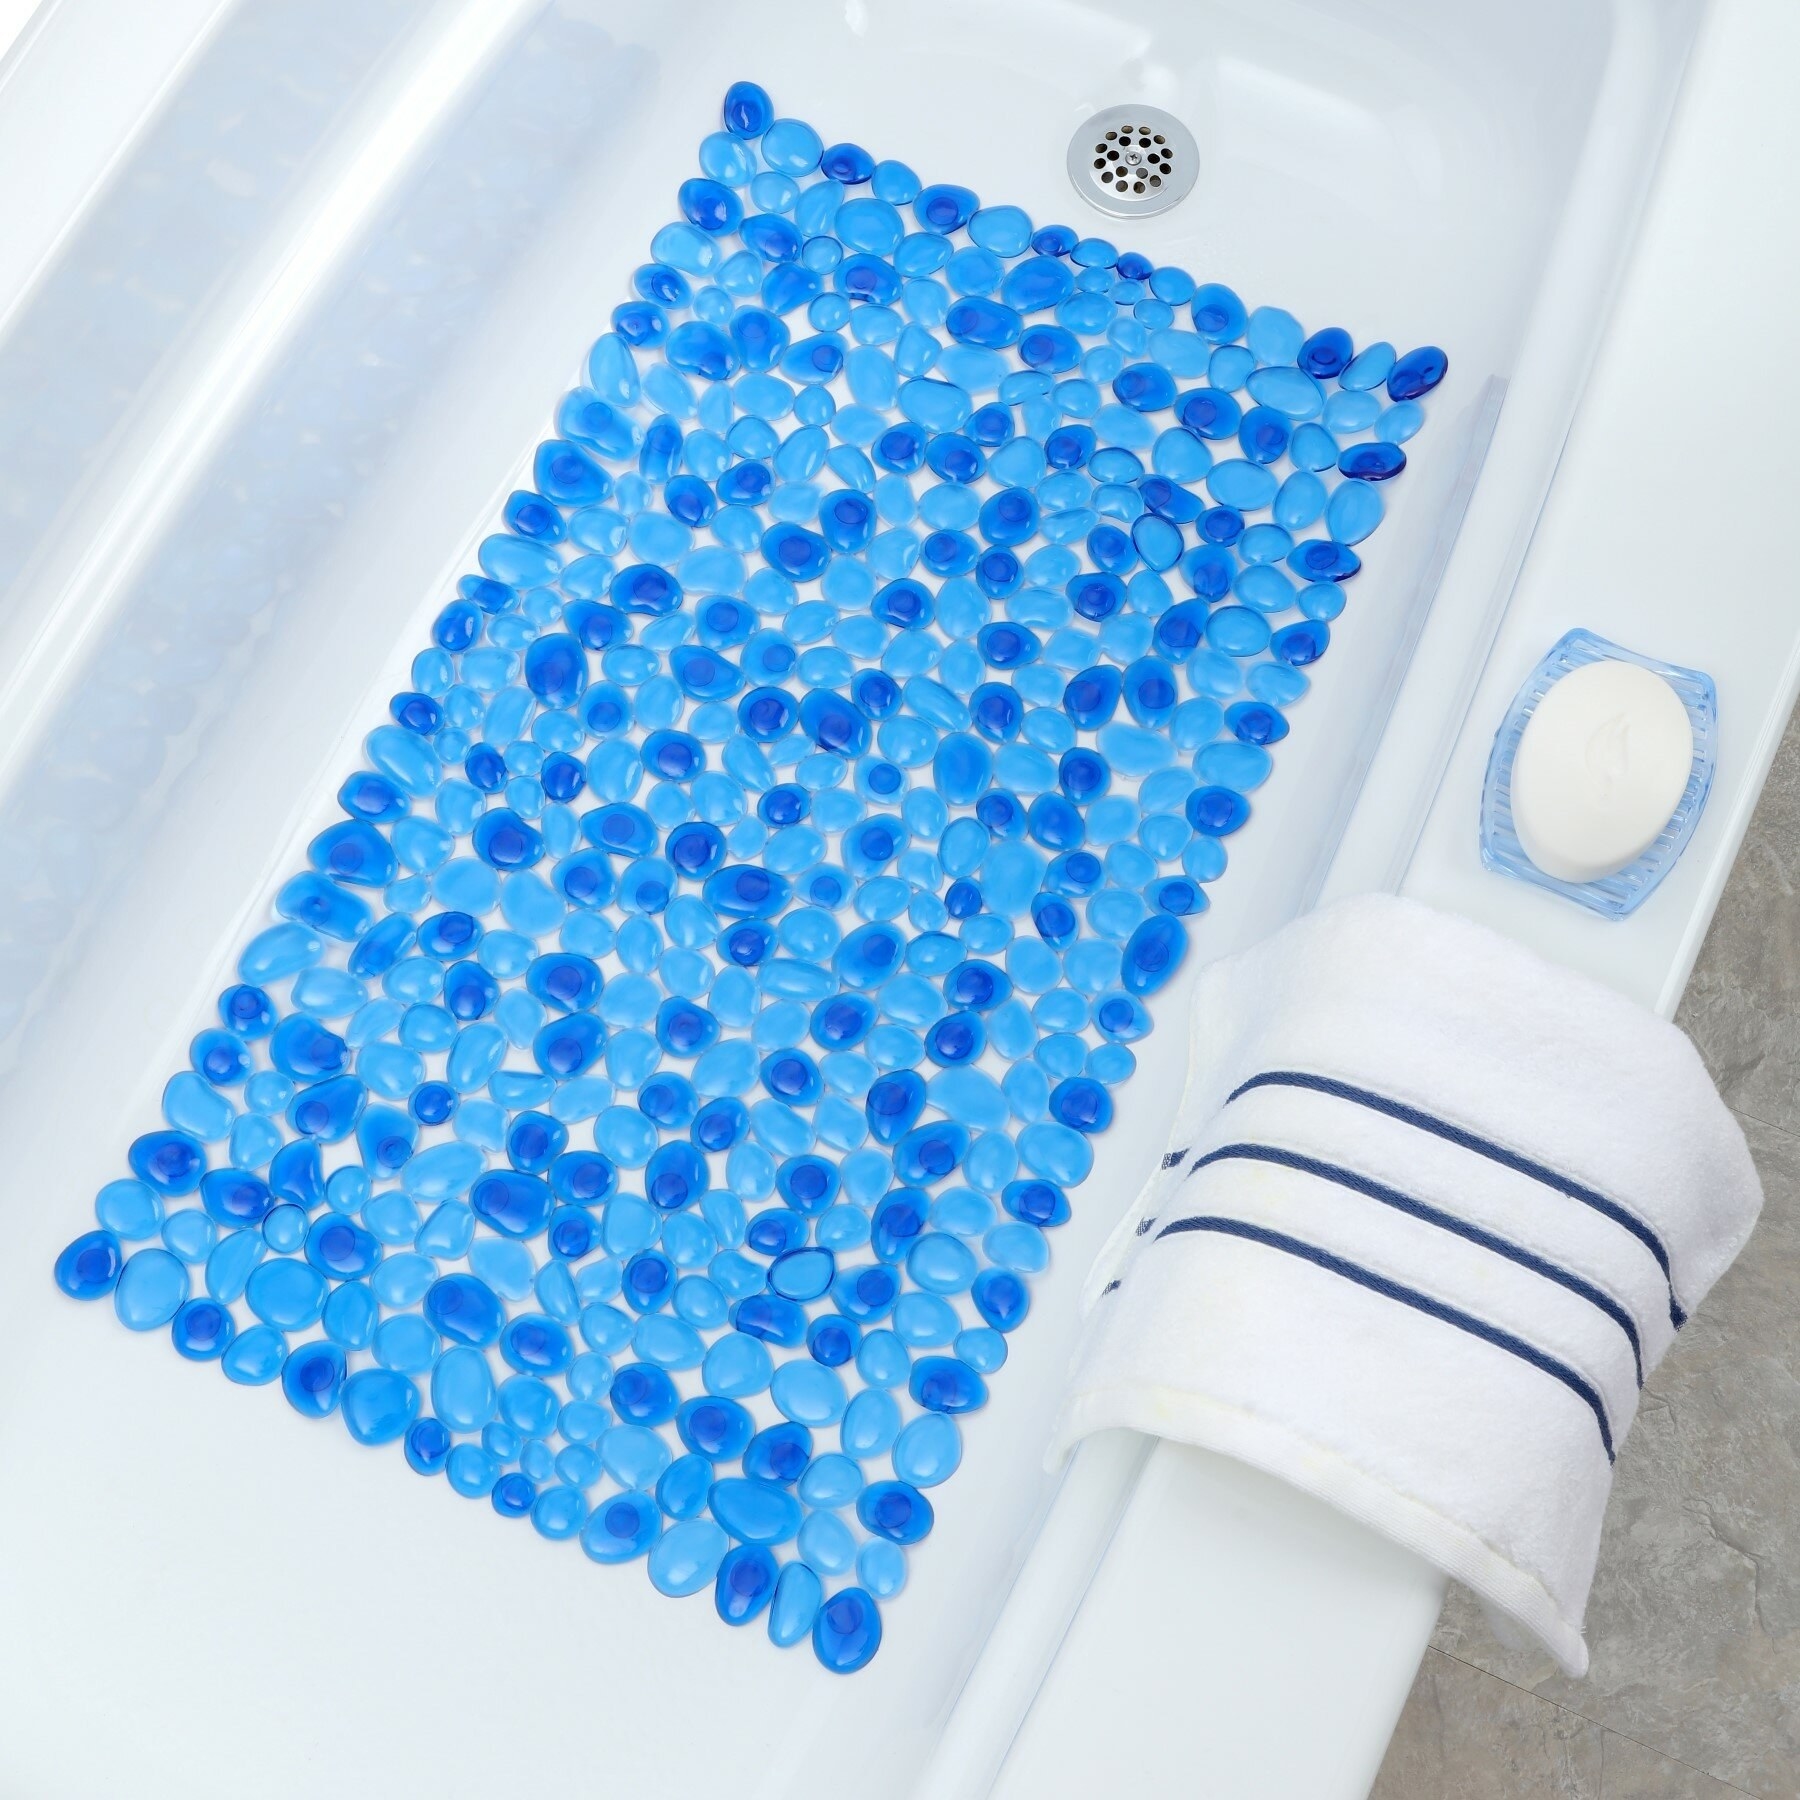 A blue pebbled bath mat in a white bath tub